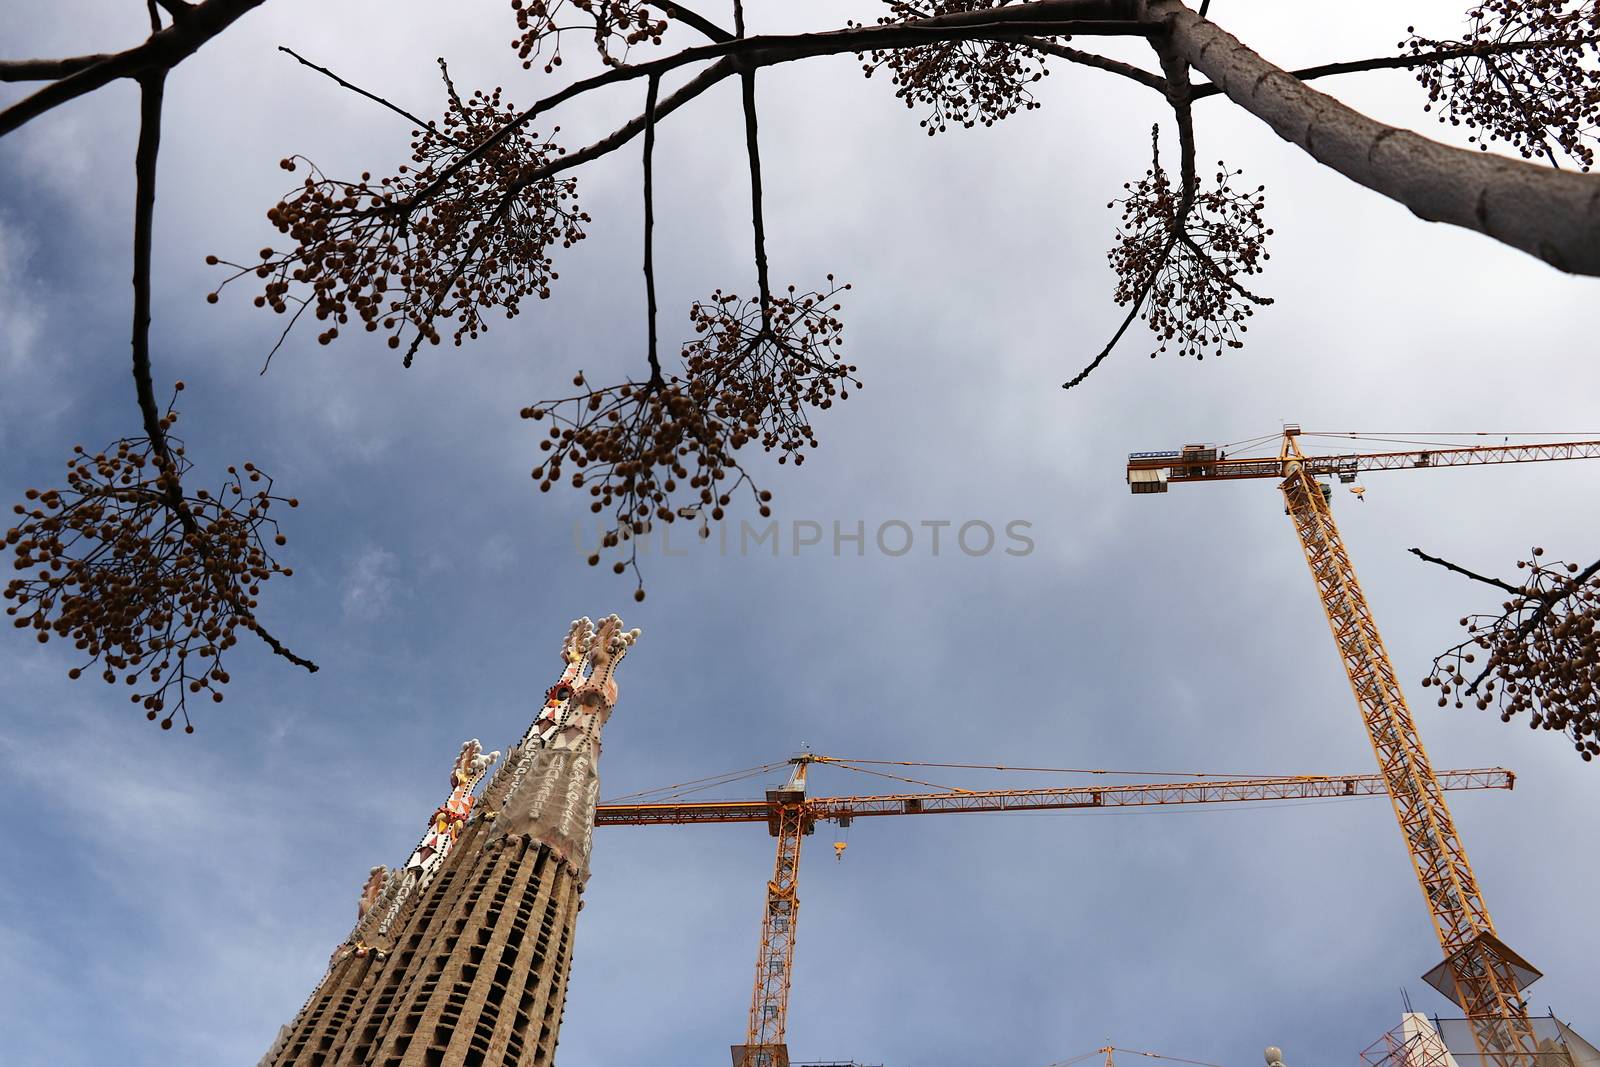 The construction site of the Sagrada Familia originally designed by Paolo_Grassi